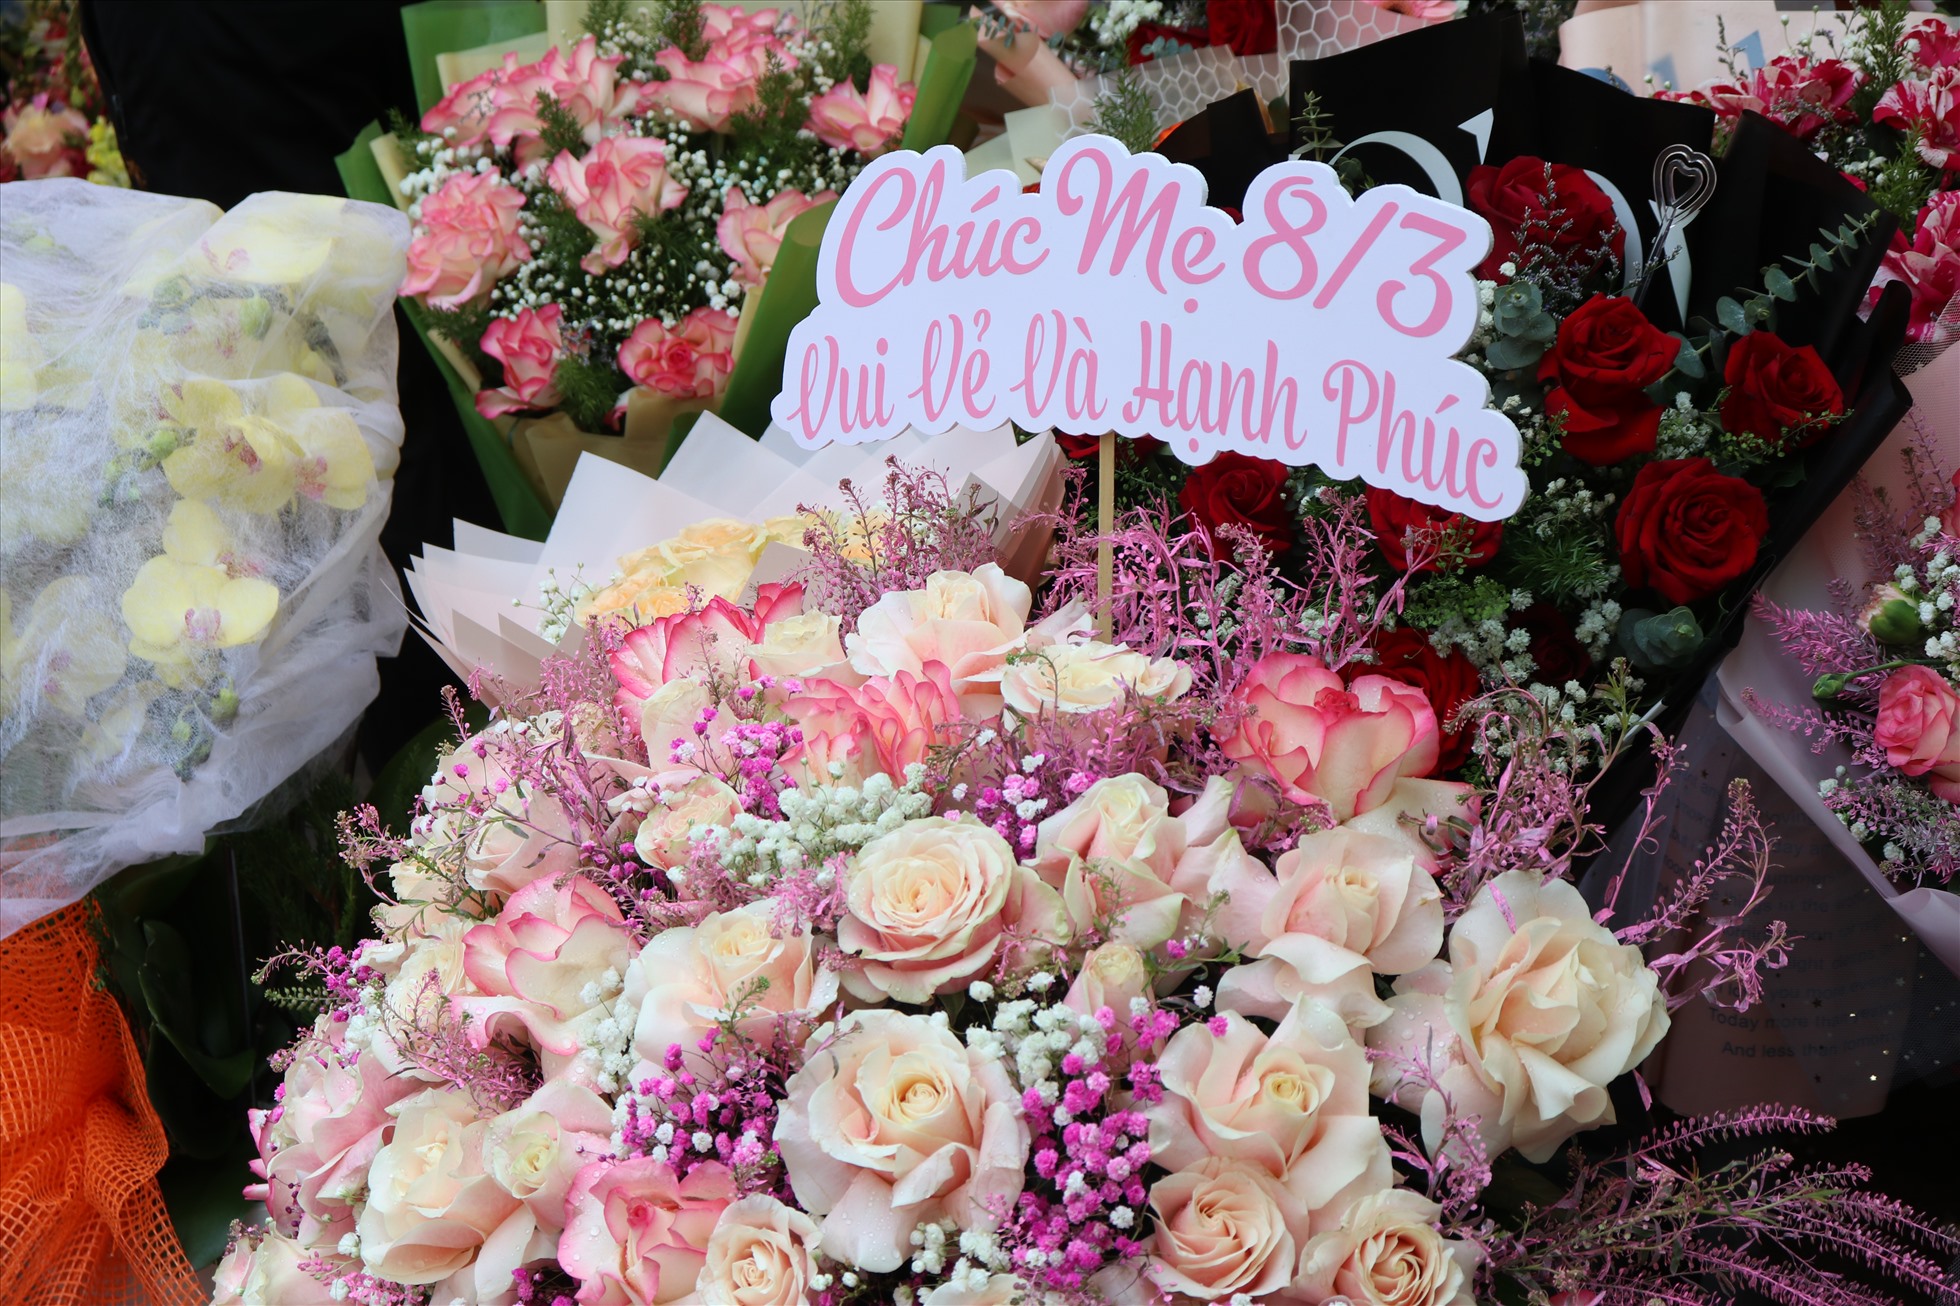 Cũng trong dịp này, nhiều cửa hàng hoa tươi cũng tung các sản phẩm theo chủ đề Quốc tế Phụ nữ như bó hoa hình trái tim, bó hoa đính kèm lời chúc… để phục vụ nhu cầu khách hàng ngày lễ. Ảnh: Việt Phong